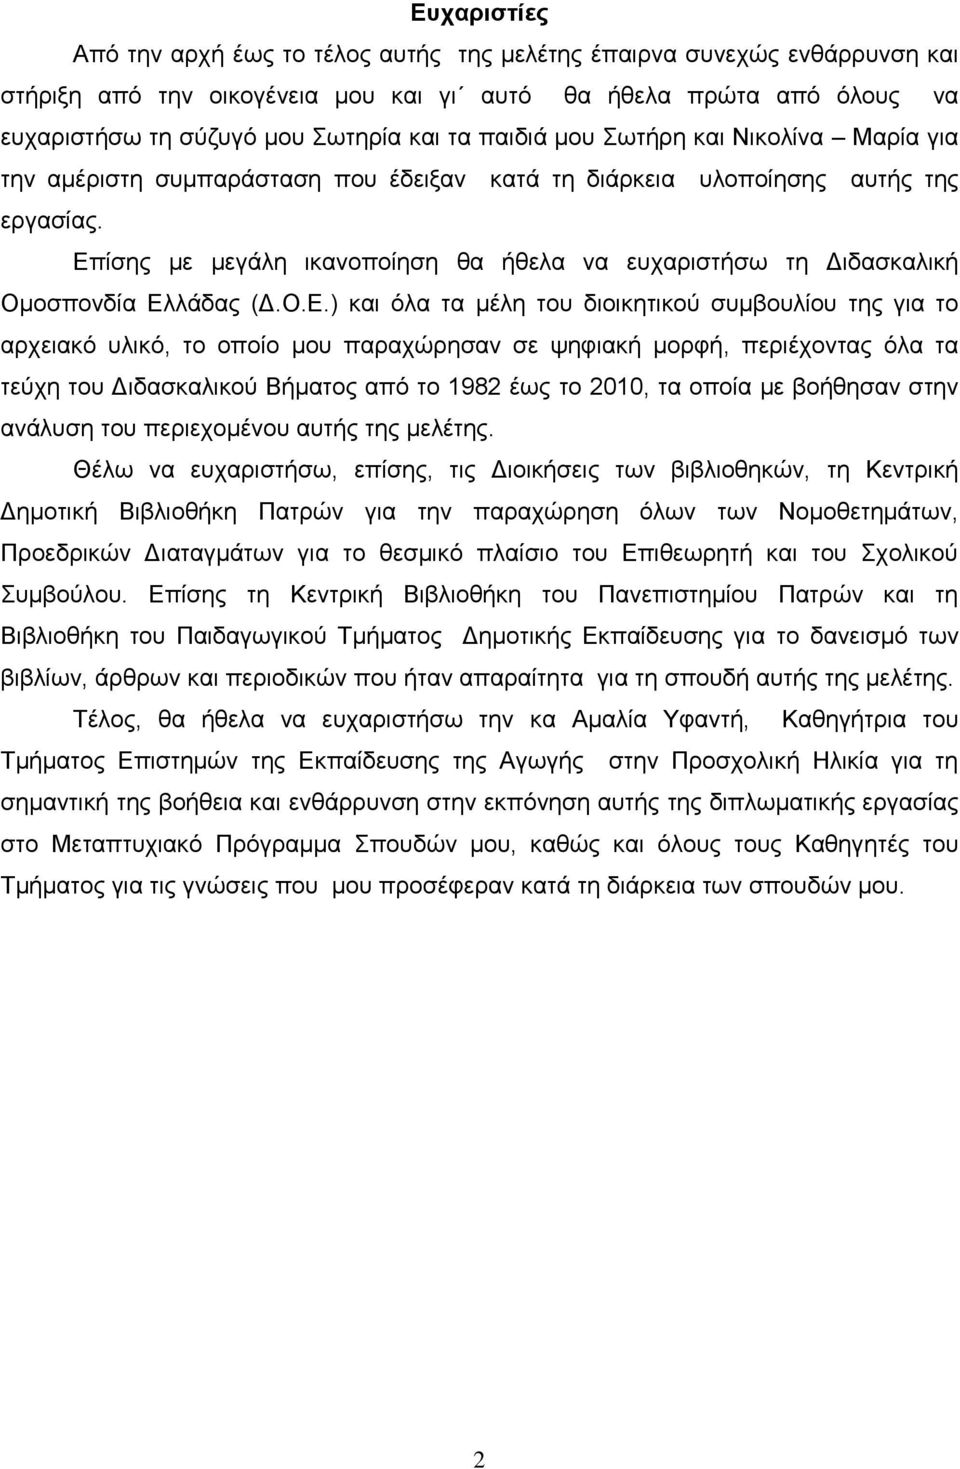 Επίσης με μεγάλη ικανοποίηση θα ήθελα να ευχαριστήσω τη Διδασκαλική Ομοσπονδία Ελλάδας (Δ.Ο.Ε.) και όλα τα μέλη του διοικητικού συμβουλίου της για το αρχειακό υλικό, το οποίο μου παραχώρησαν σε